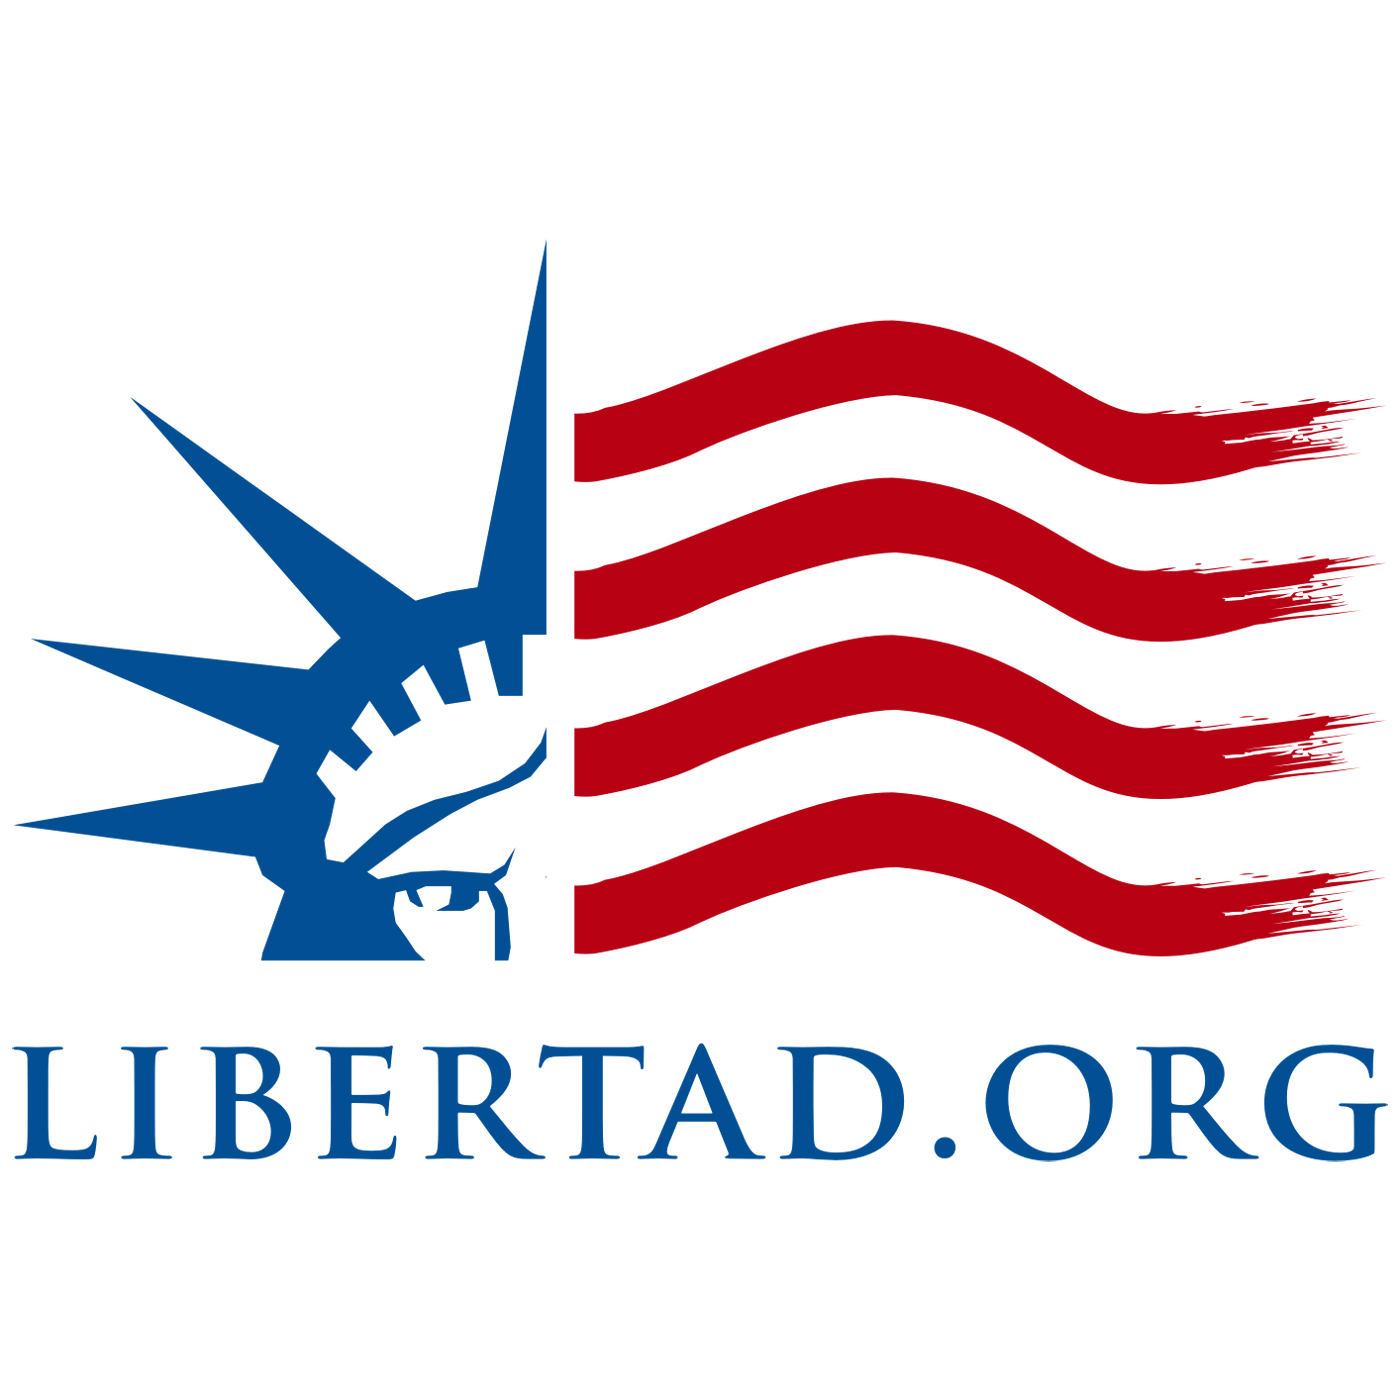 (c) Libertad.org